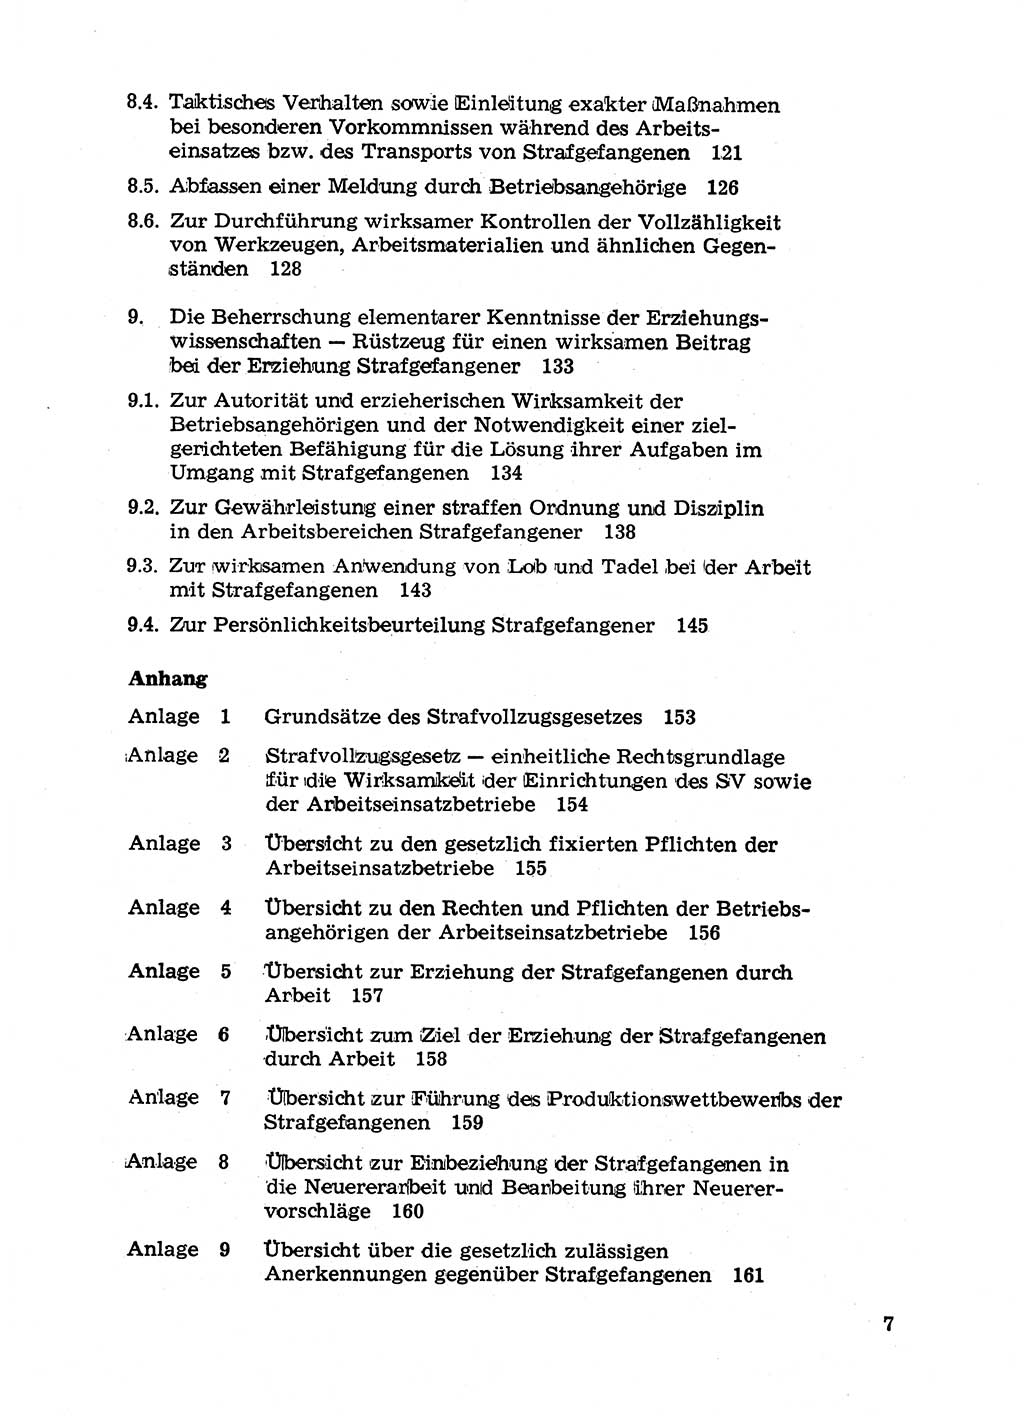 Handbuch für Betriebsangehörige, Abteilung Strafvollzug (SV) [Ministerium des Innern (MdI) Deutsche Demokratische Republik (DDR)] 1981, Seite 7 (Hb. BA Abt. SV MdI DDR 1981, S. 7)